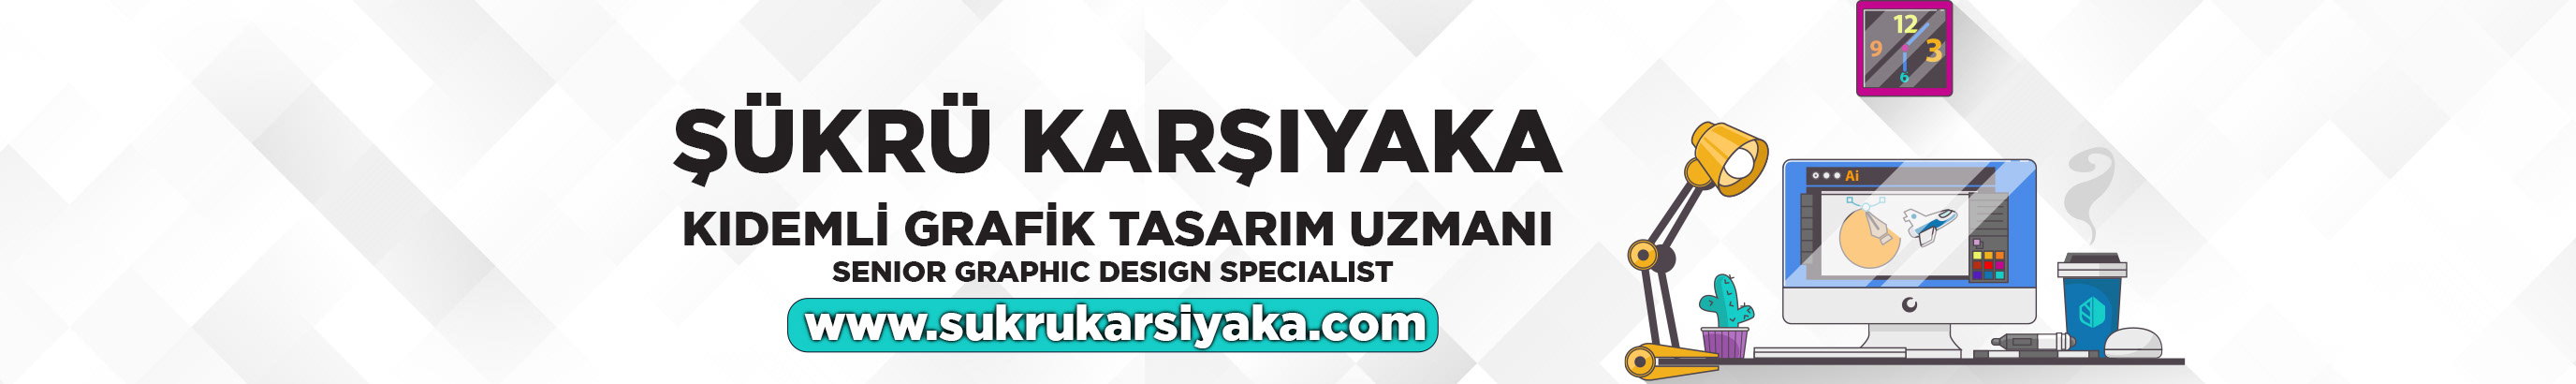 Bannière de profil de Şükrü Karşıyaka